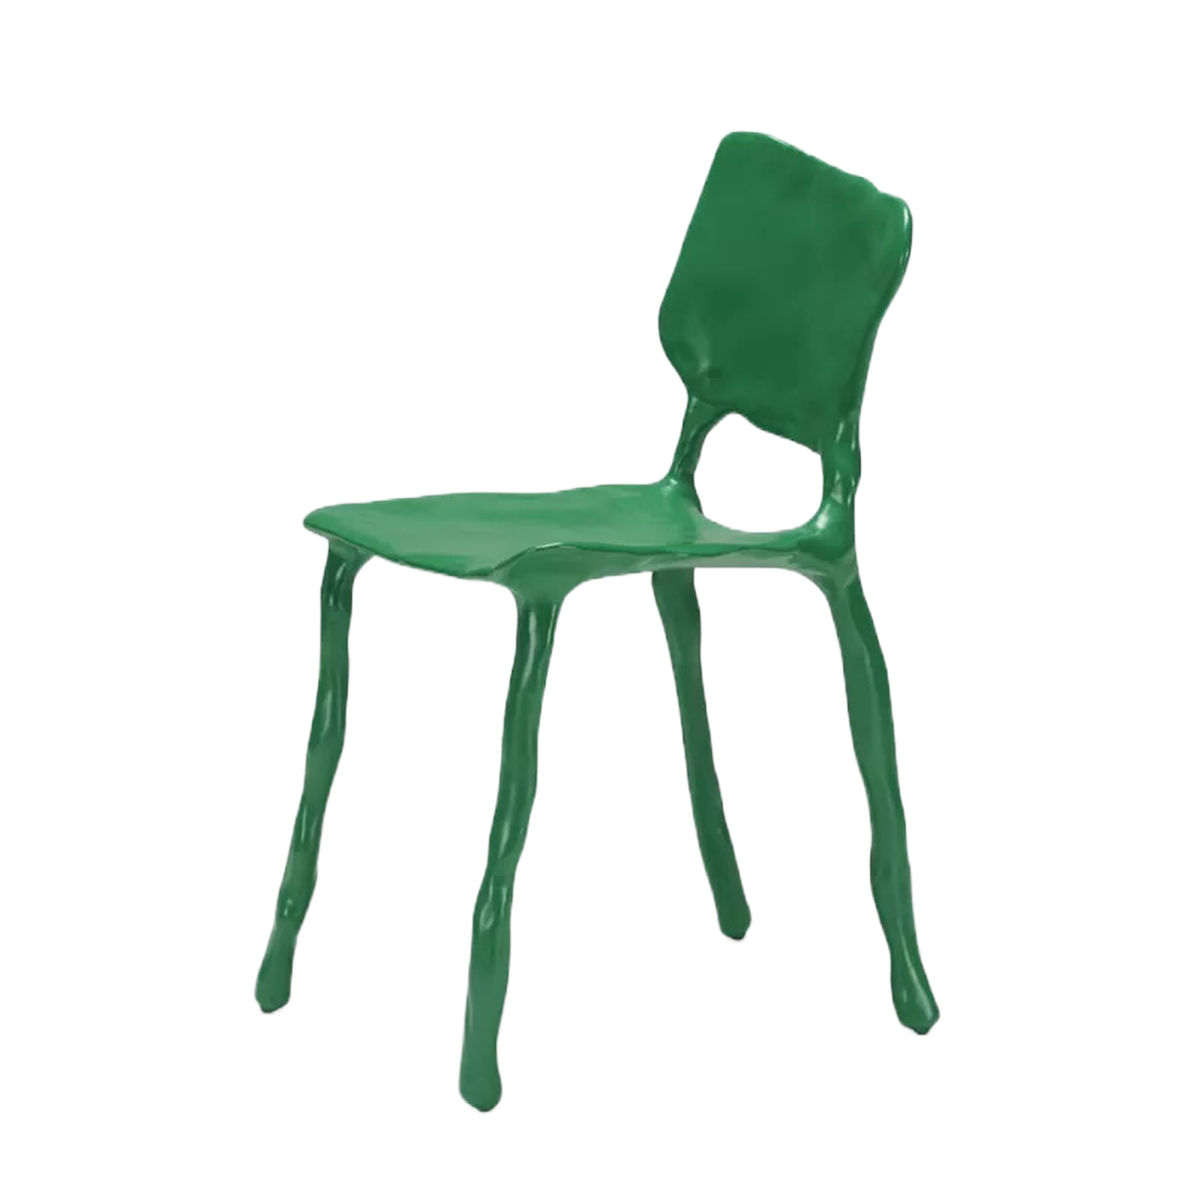 clay chair